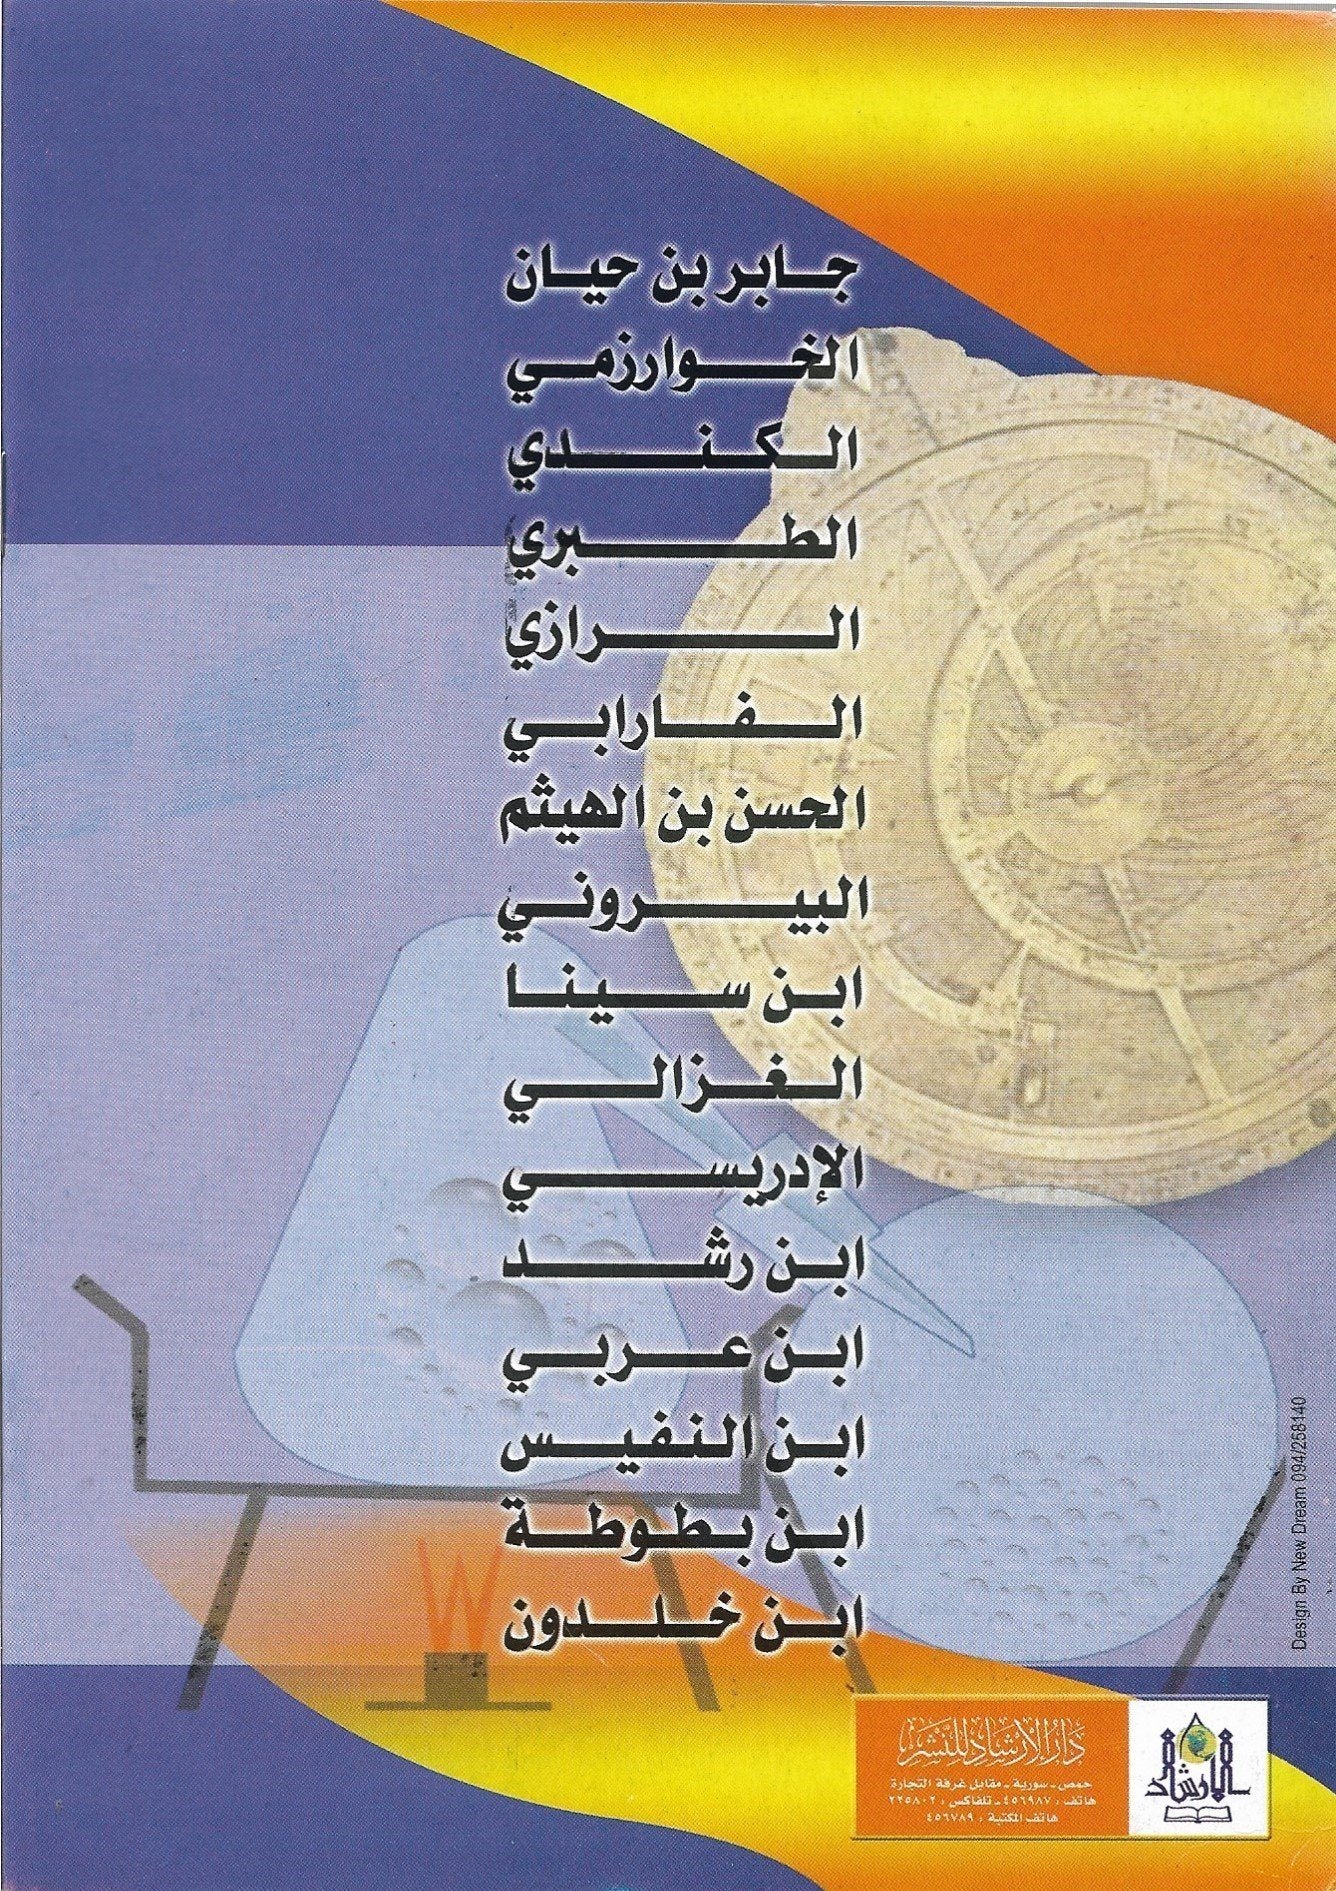 سلسلة أعلام الفكر العربي كتب أطفال خالد حداد